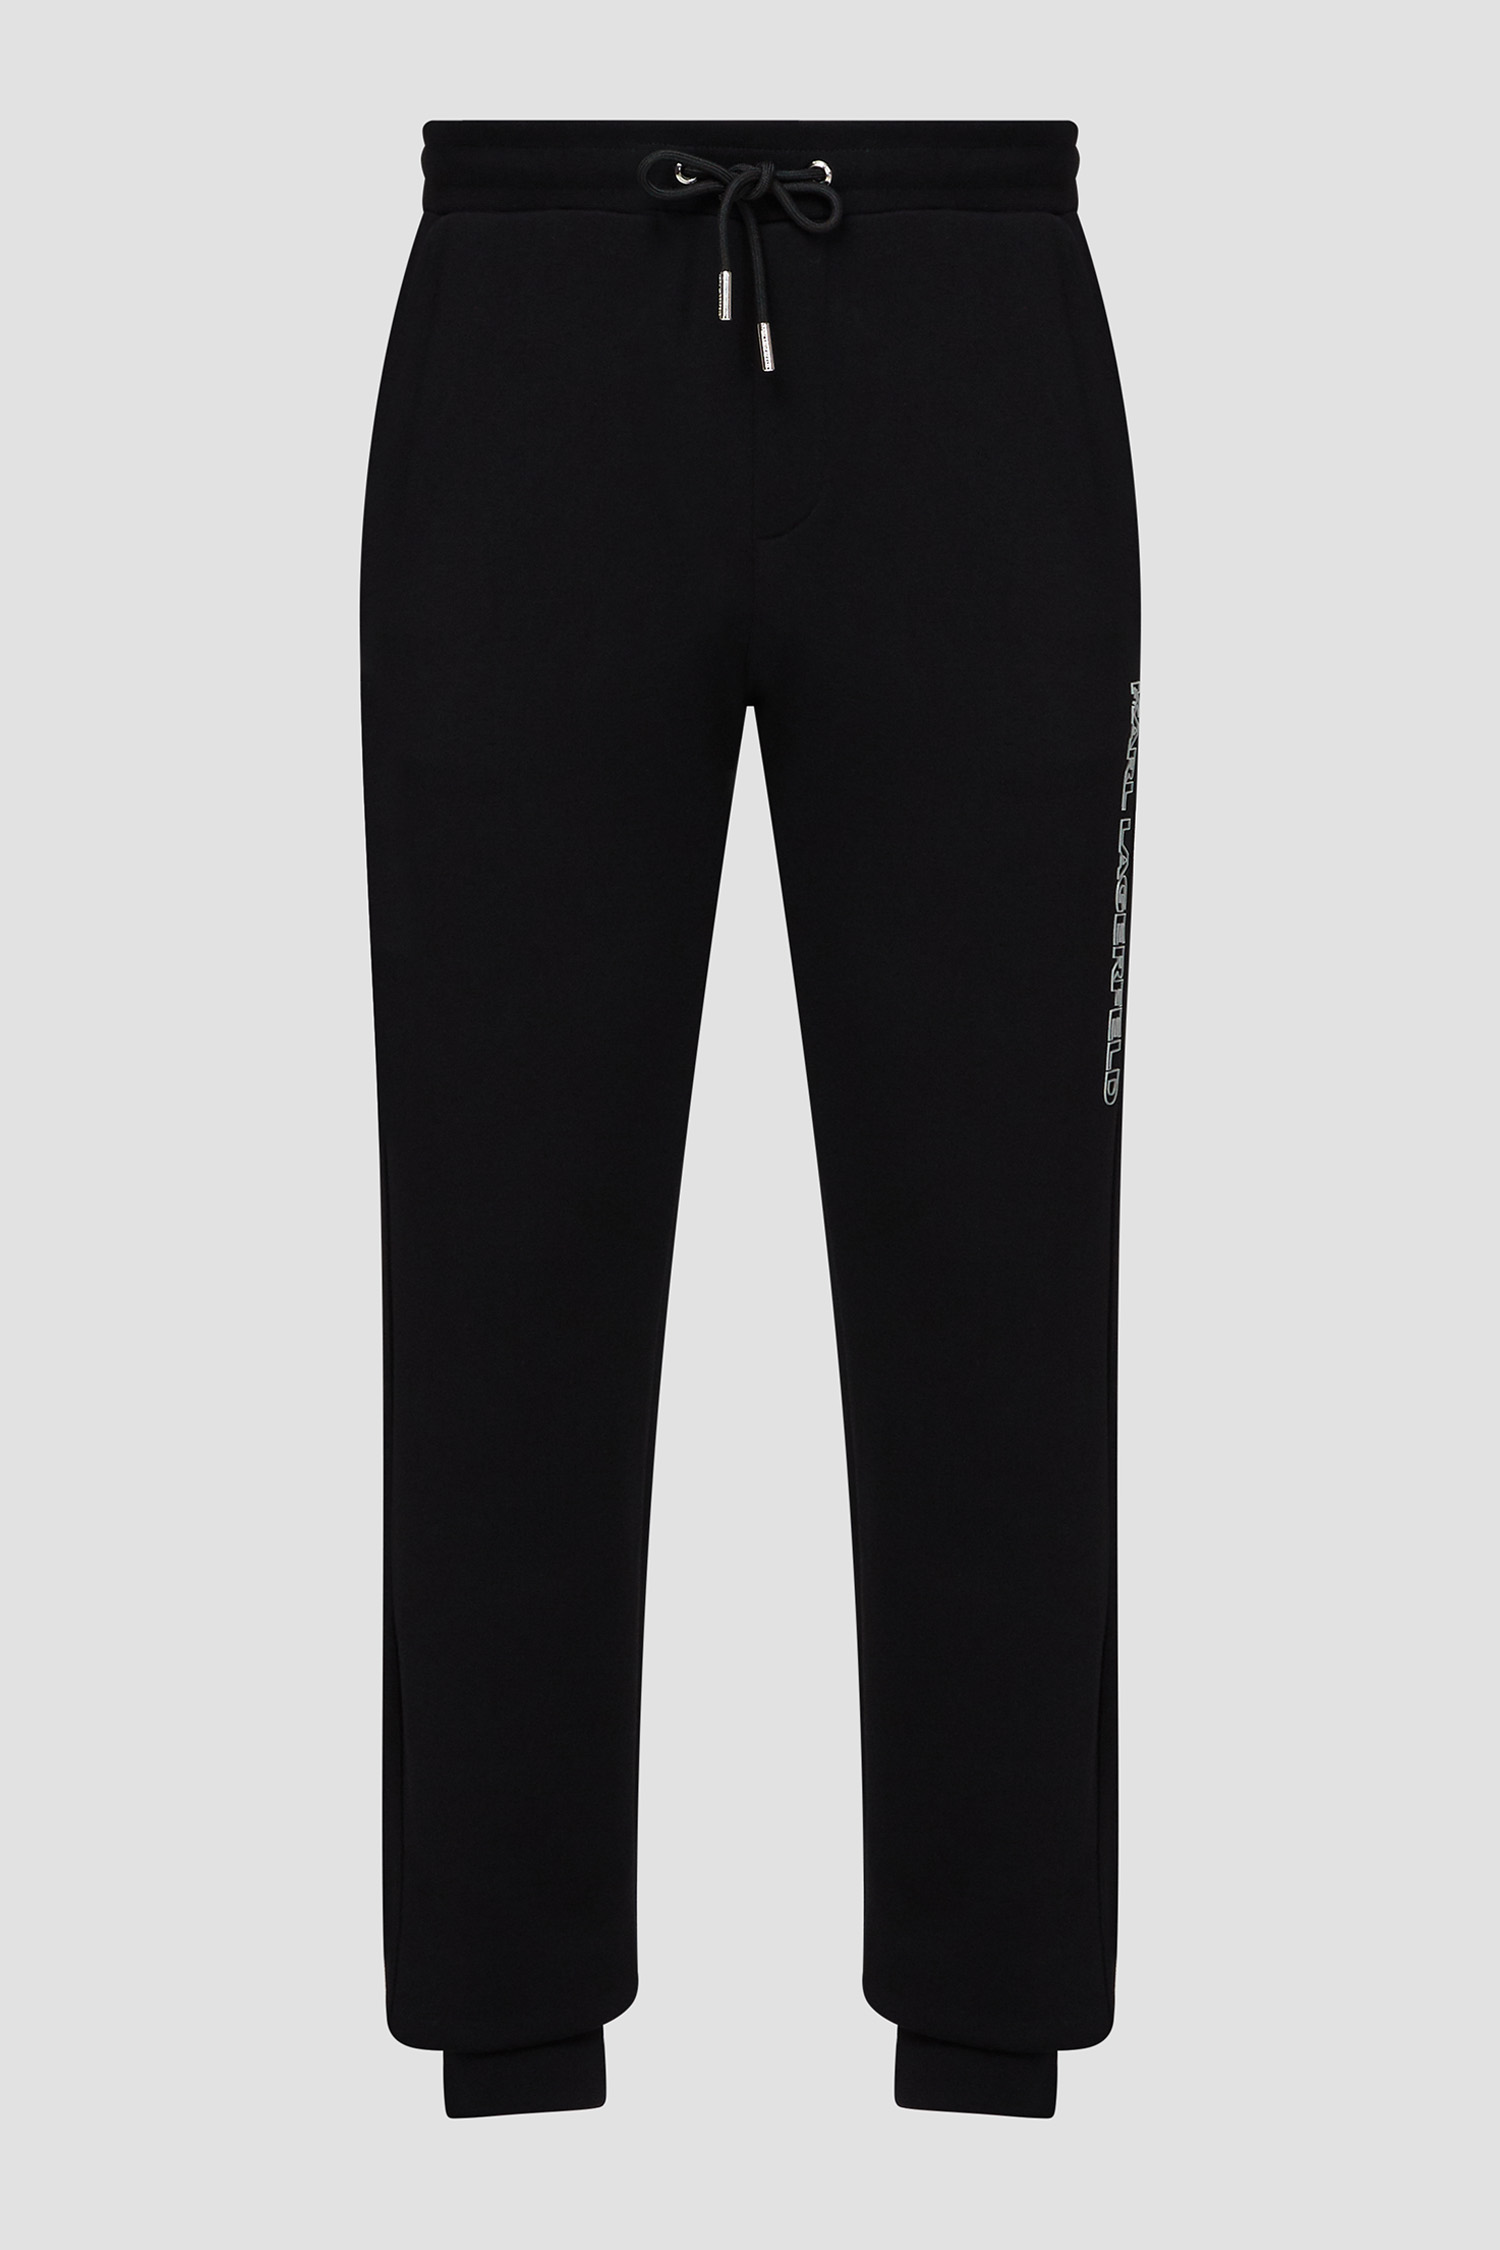 Мужские черные спортивные брюки Karl Lagerfeld 532900.705036;910